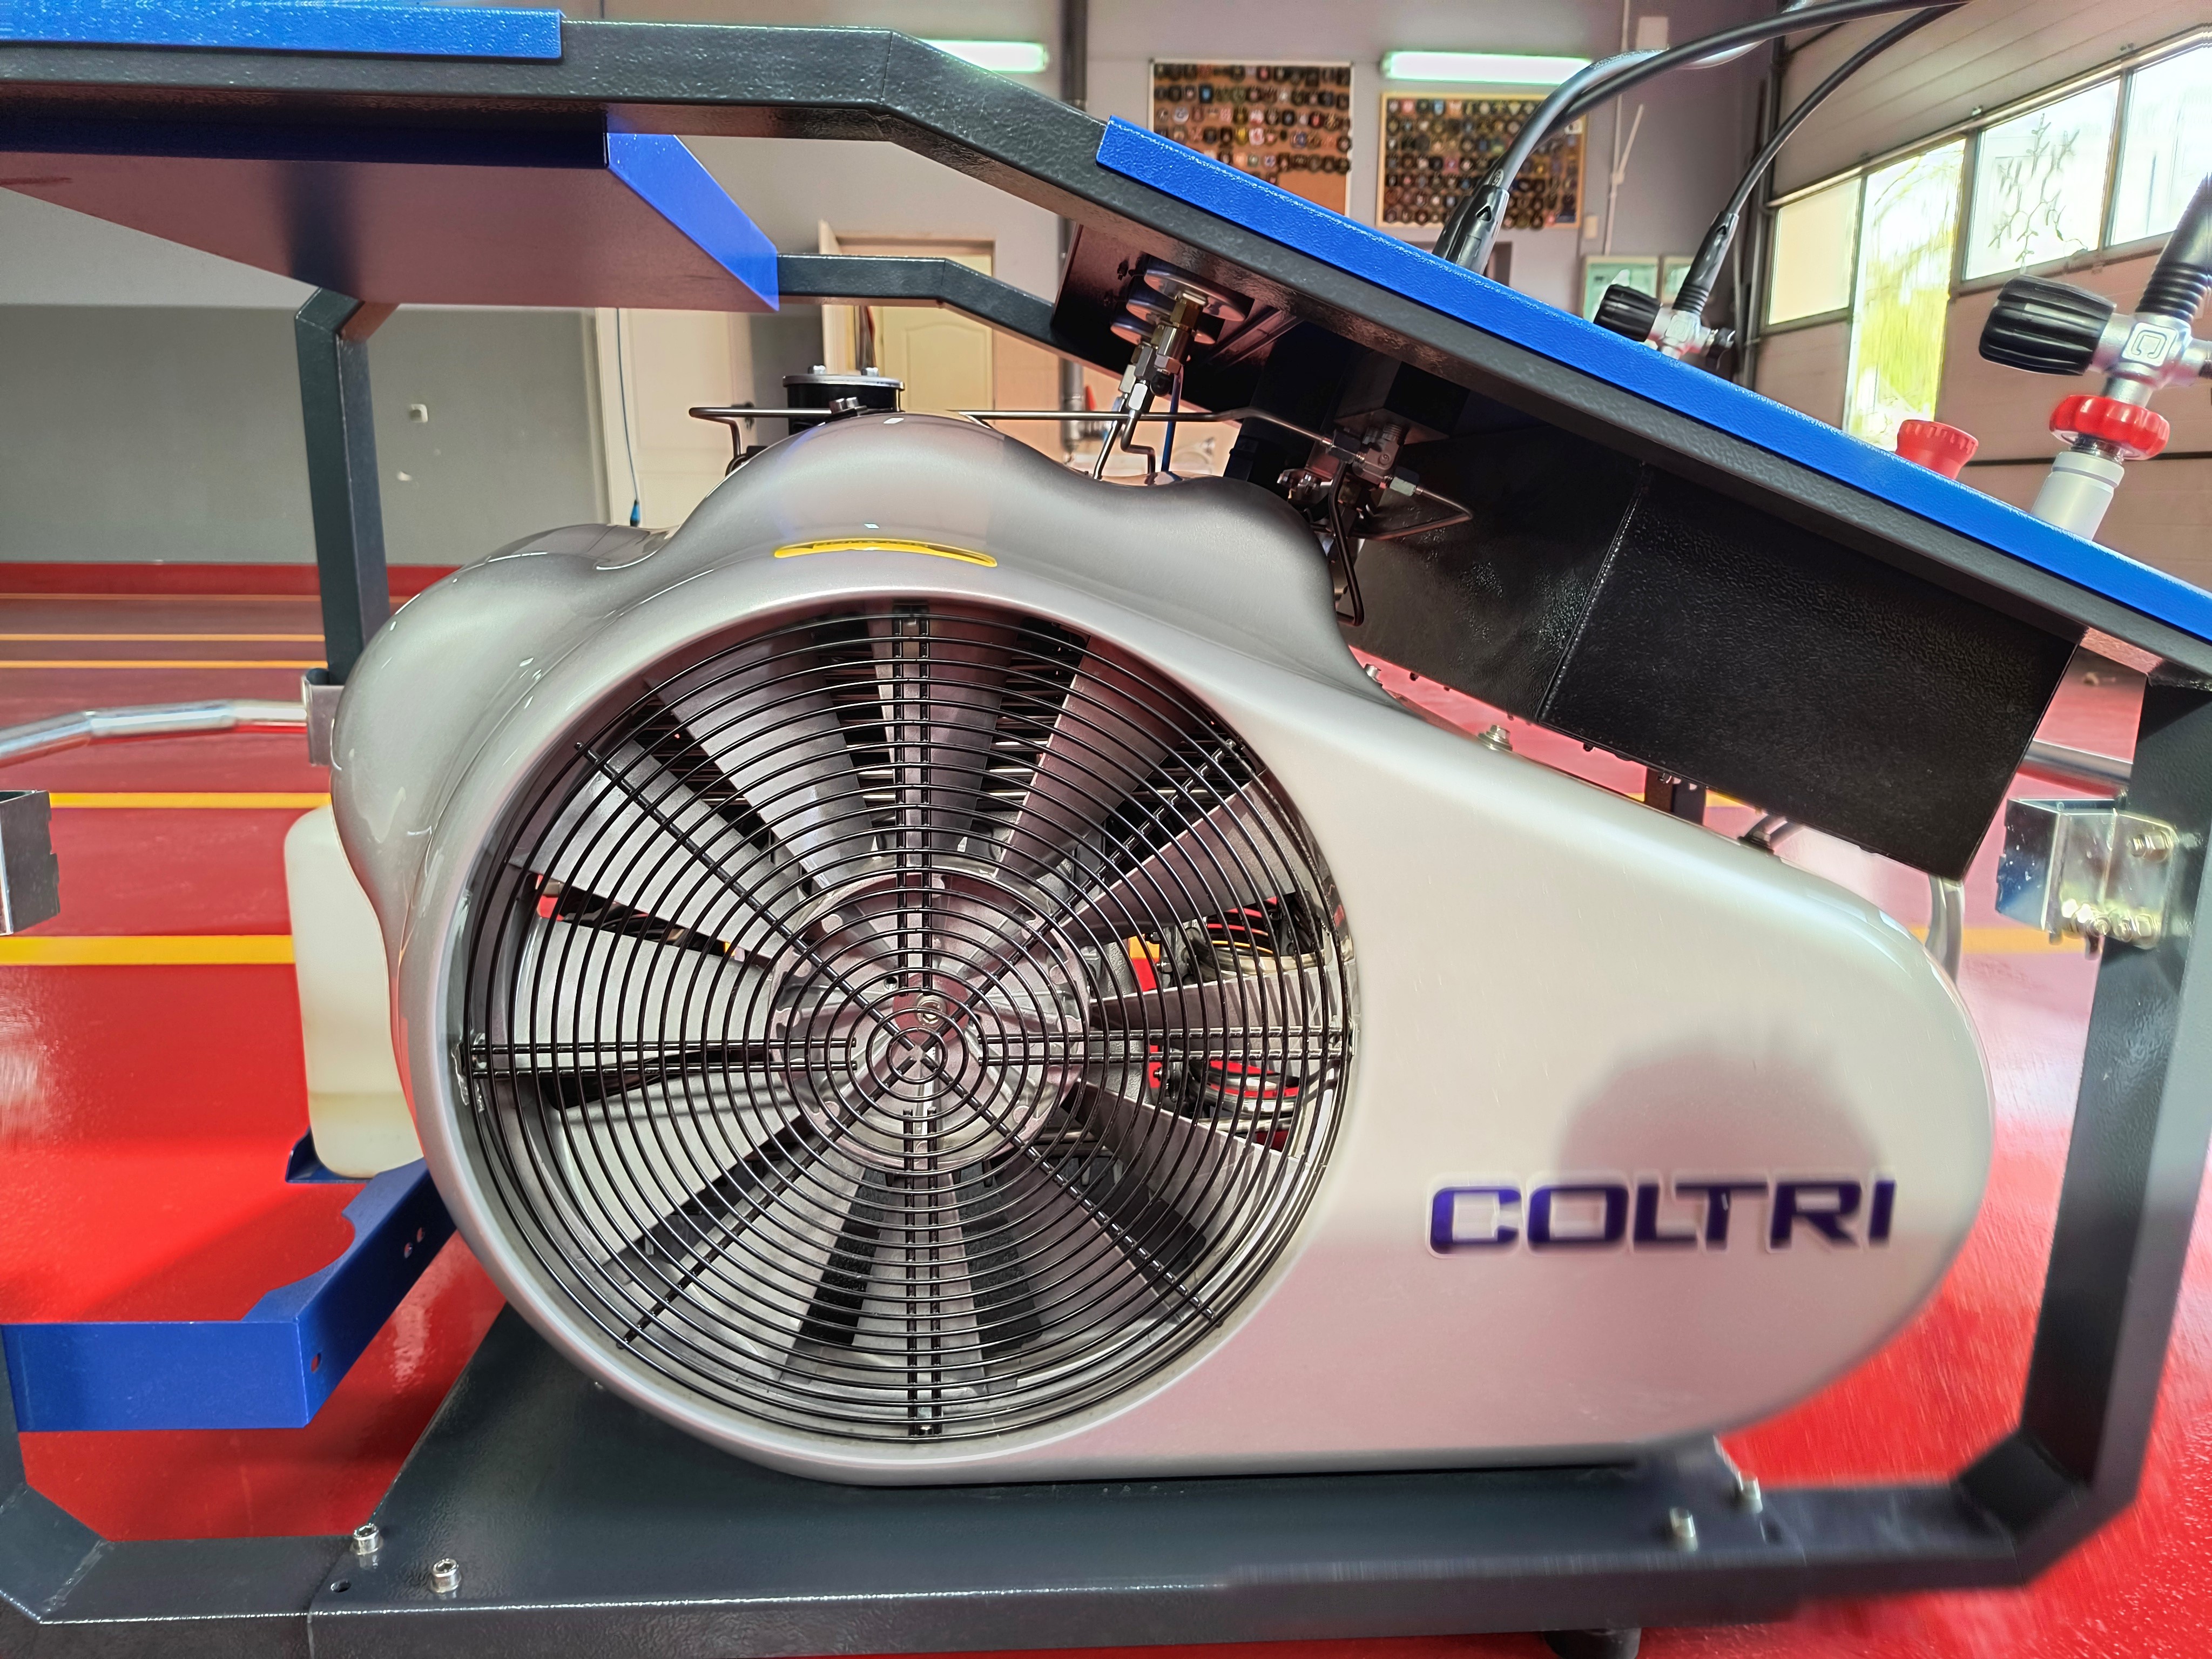 UŻYWANA Sprężarka Coltri MCH 16 ERGO z silnikiem elektrycznym 3 fazowym.